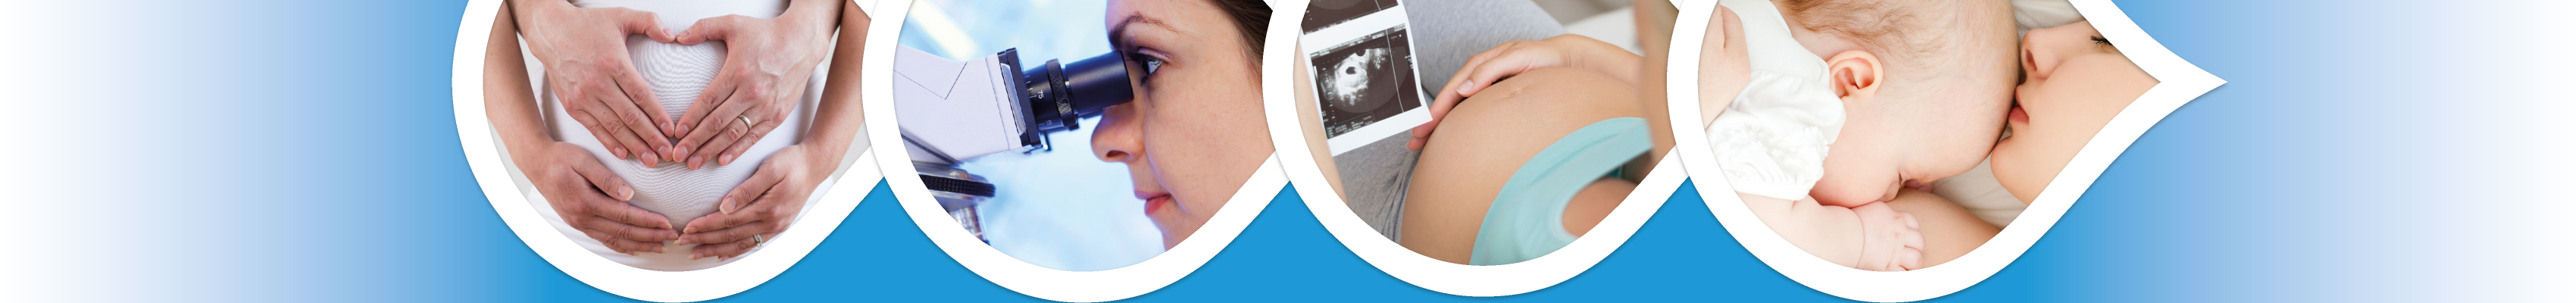 Ventre enceinte avec des mains en forme de cœur, scientifique regardant dans un microscope femme avec des images d'échographie femme embrassant le bébé